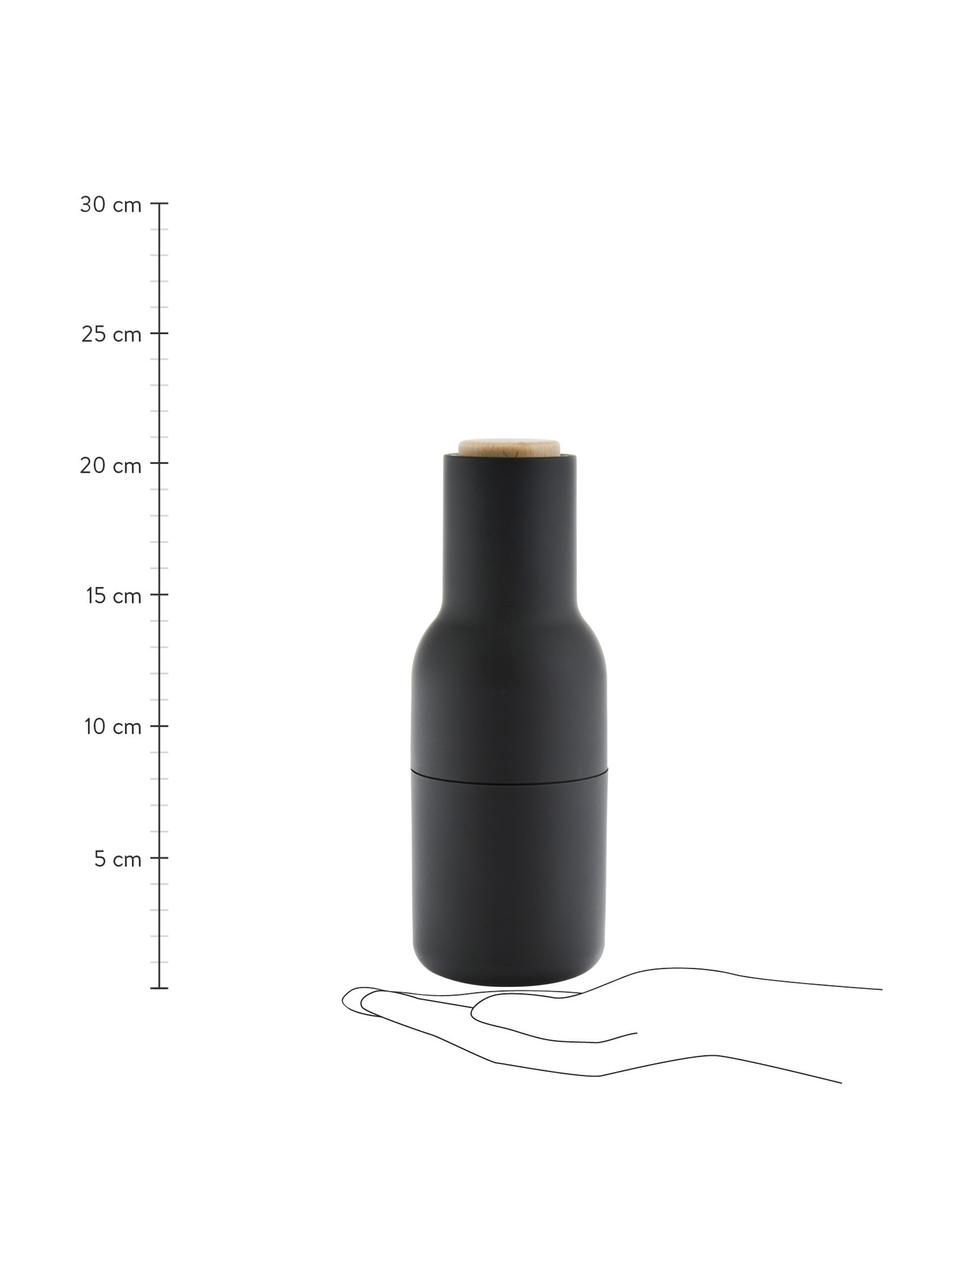 Sada designových mlýnků na sůl a pepř s dřevěnými víčky Bottle Grinder, 2 díly, Antracitová, bílá, bukové dřevo, Ø 8 cm, V 21 cm